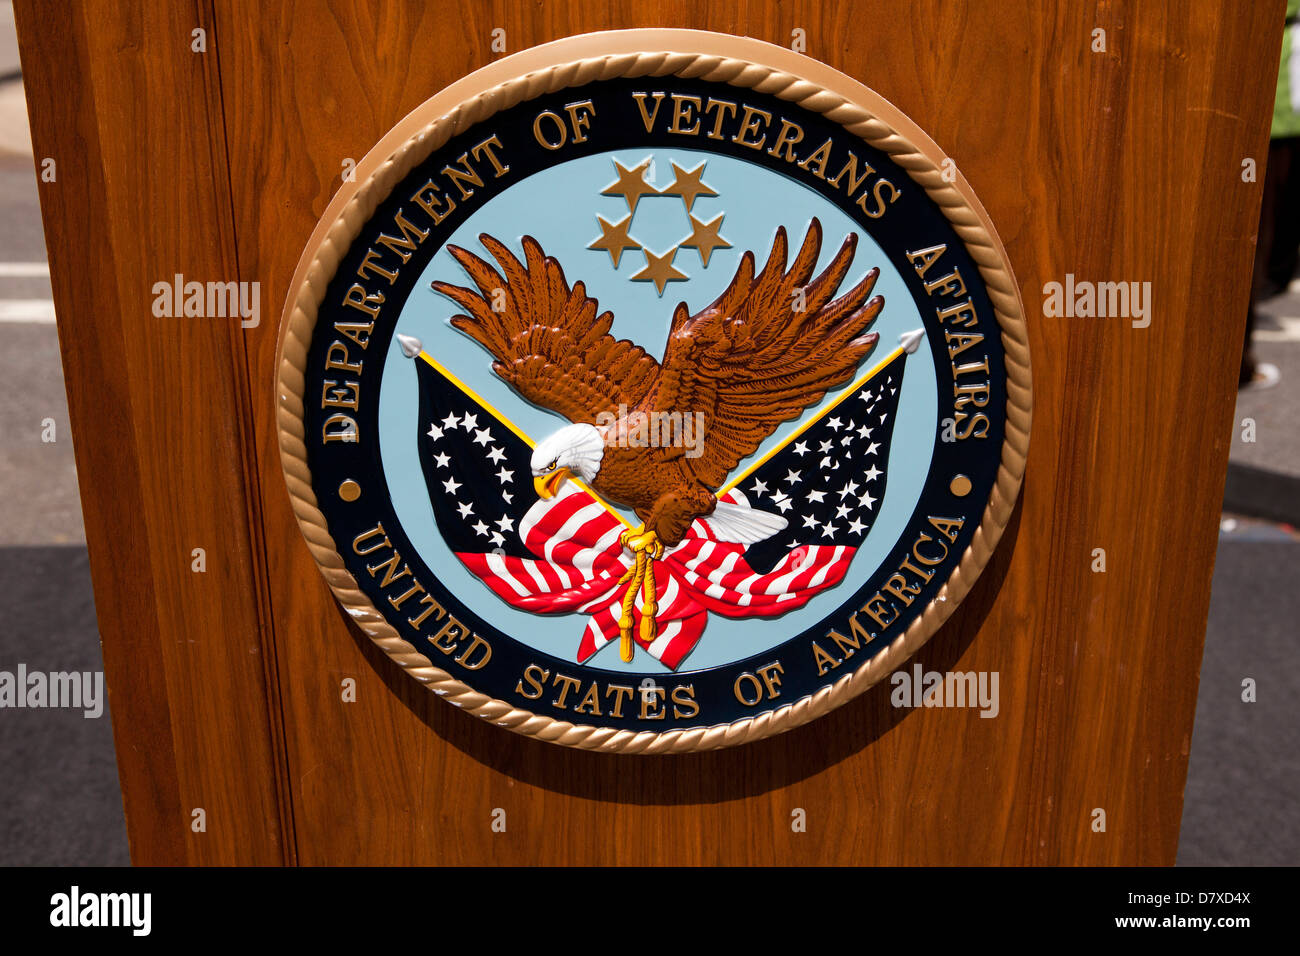 Noi reparto degli affari di veterani della guarnizione - USA Foto Stock